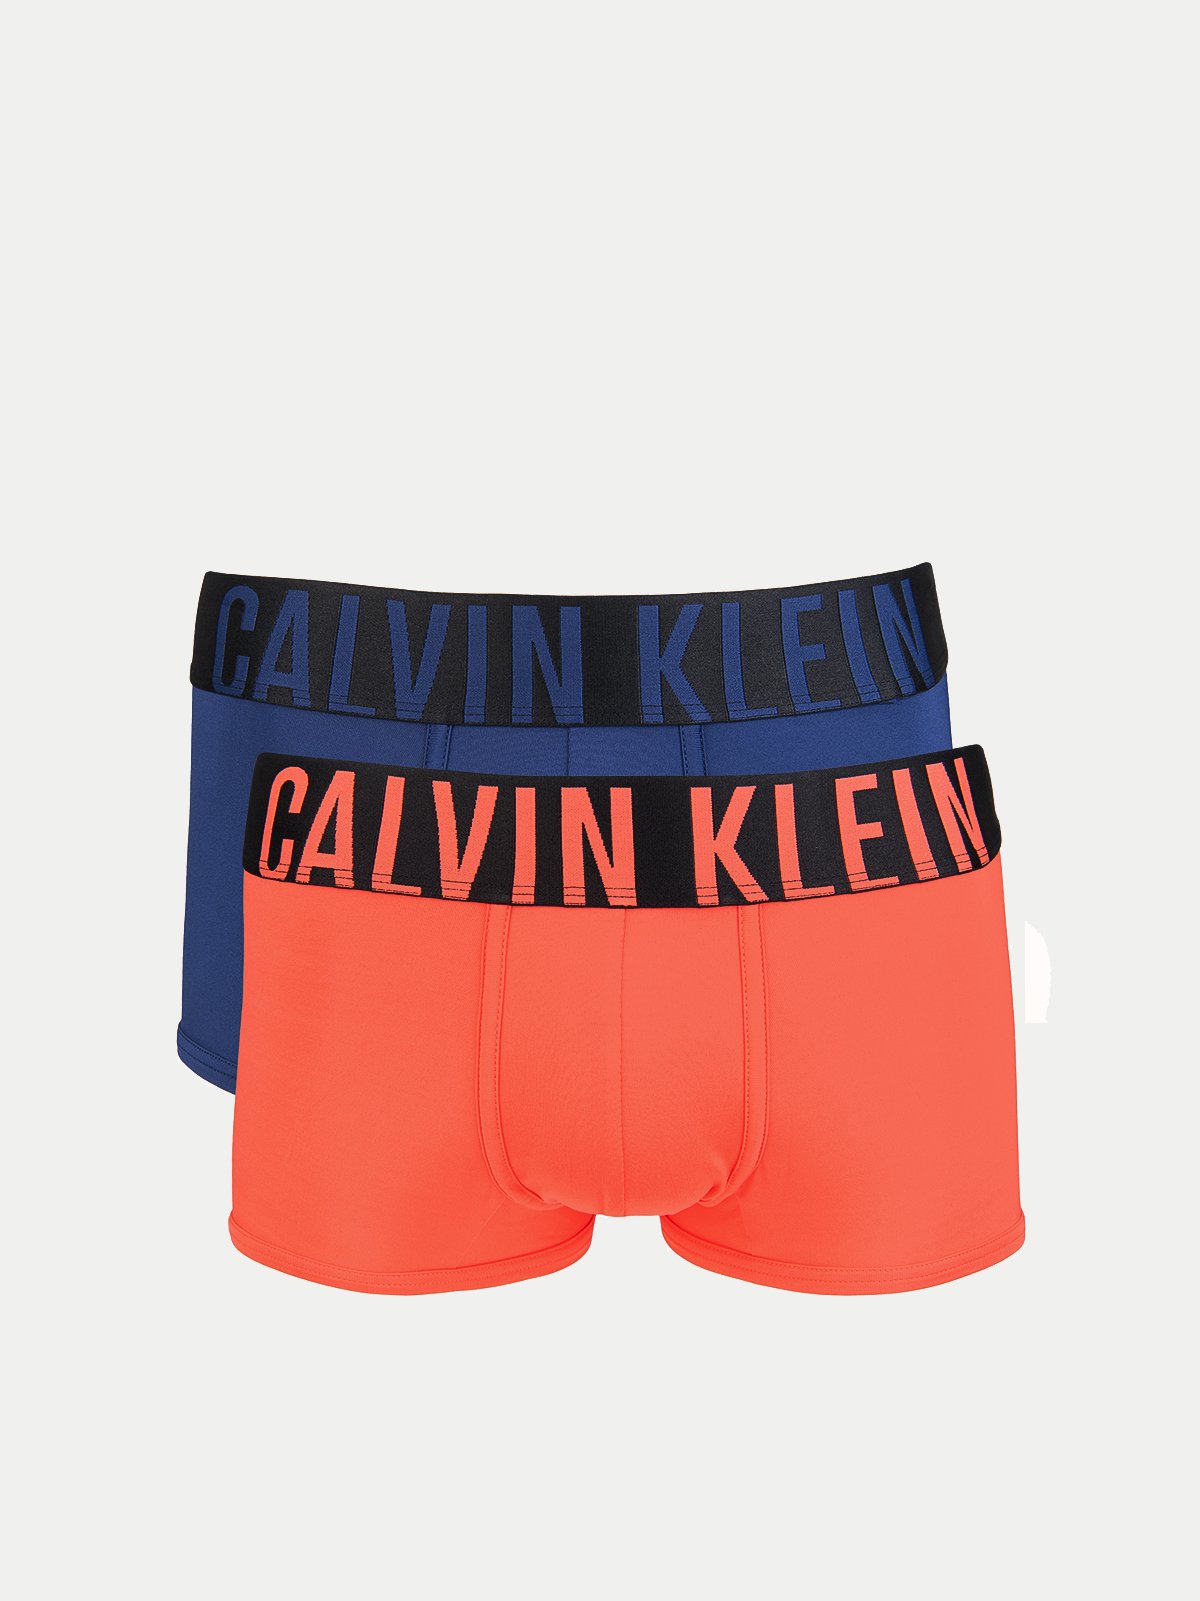 Men's underwear set 2PK Calvin Klein Underwear 